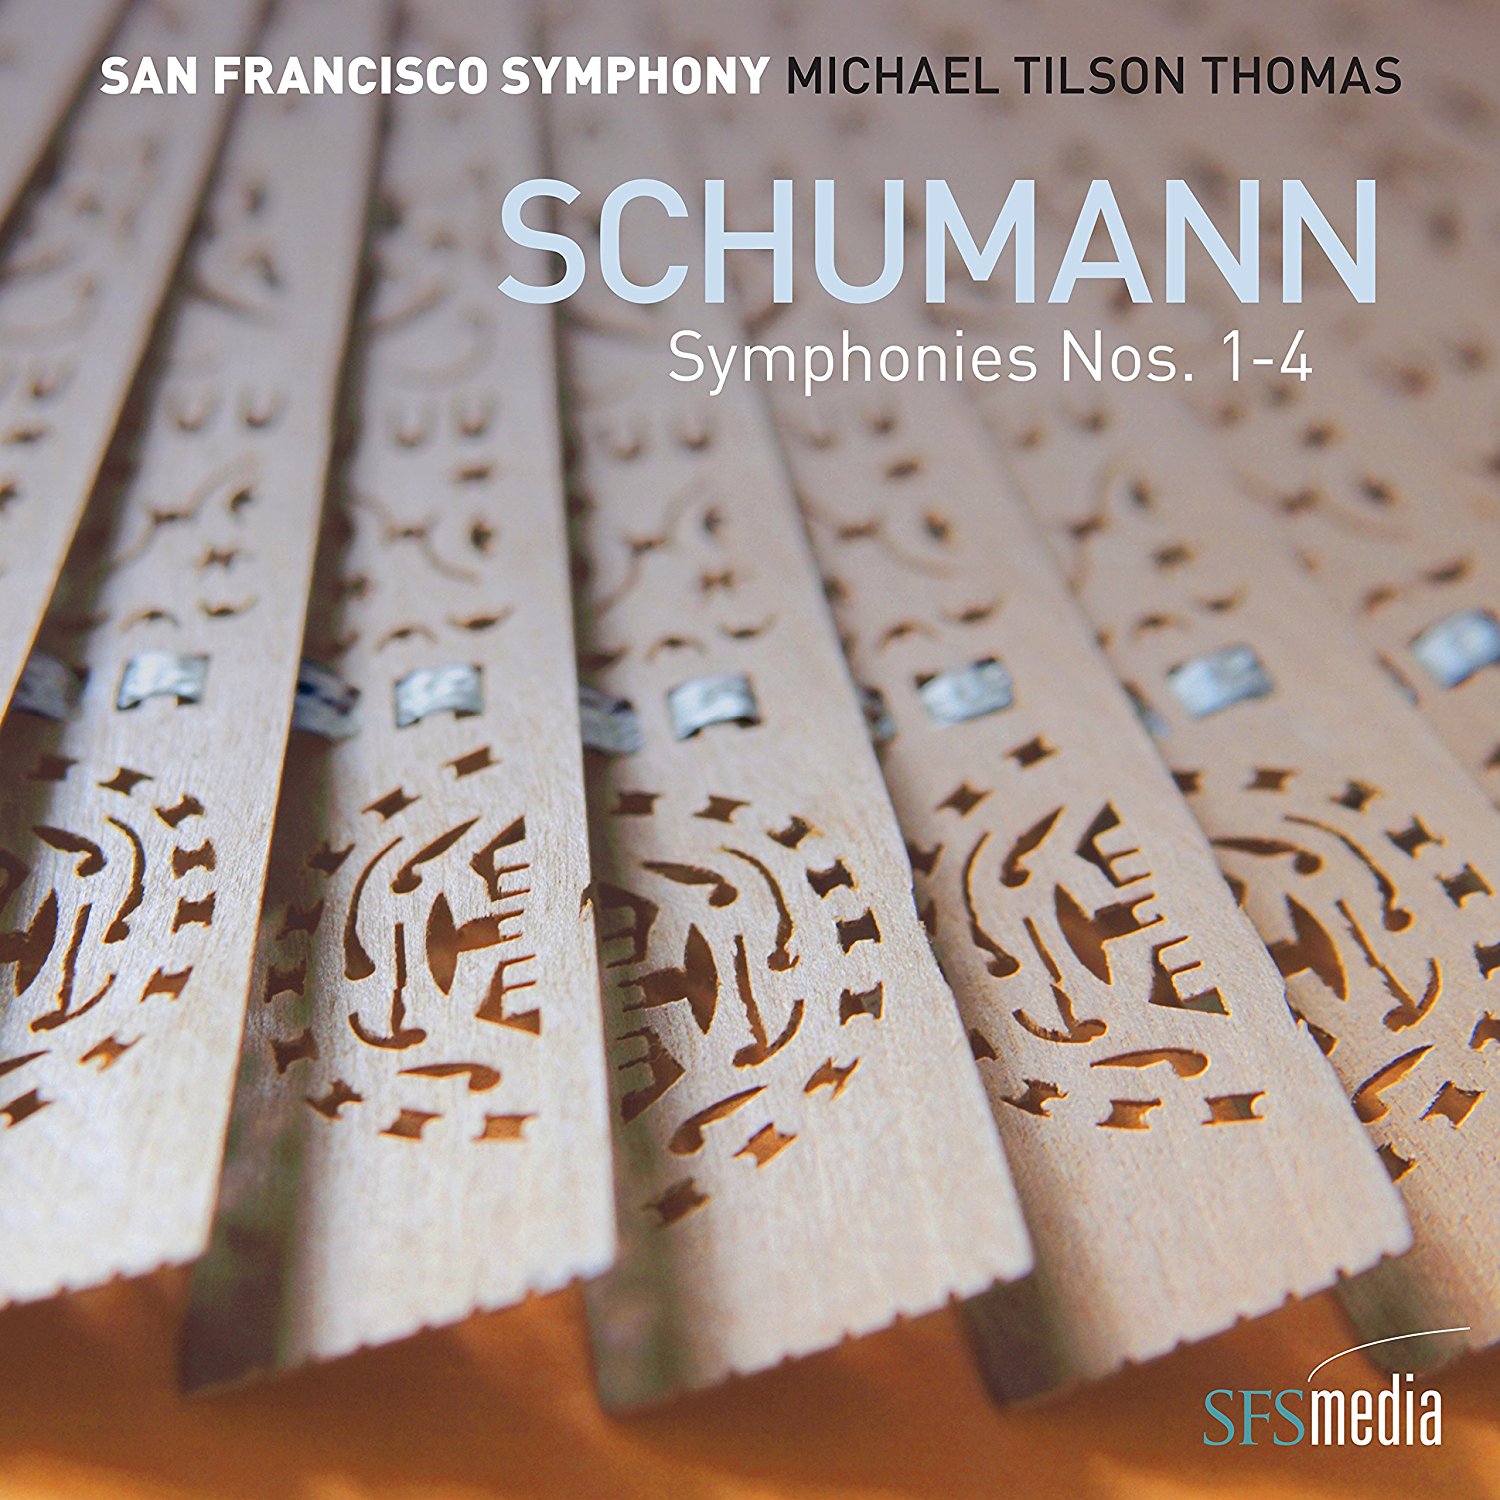 MTT's Schumann